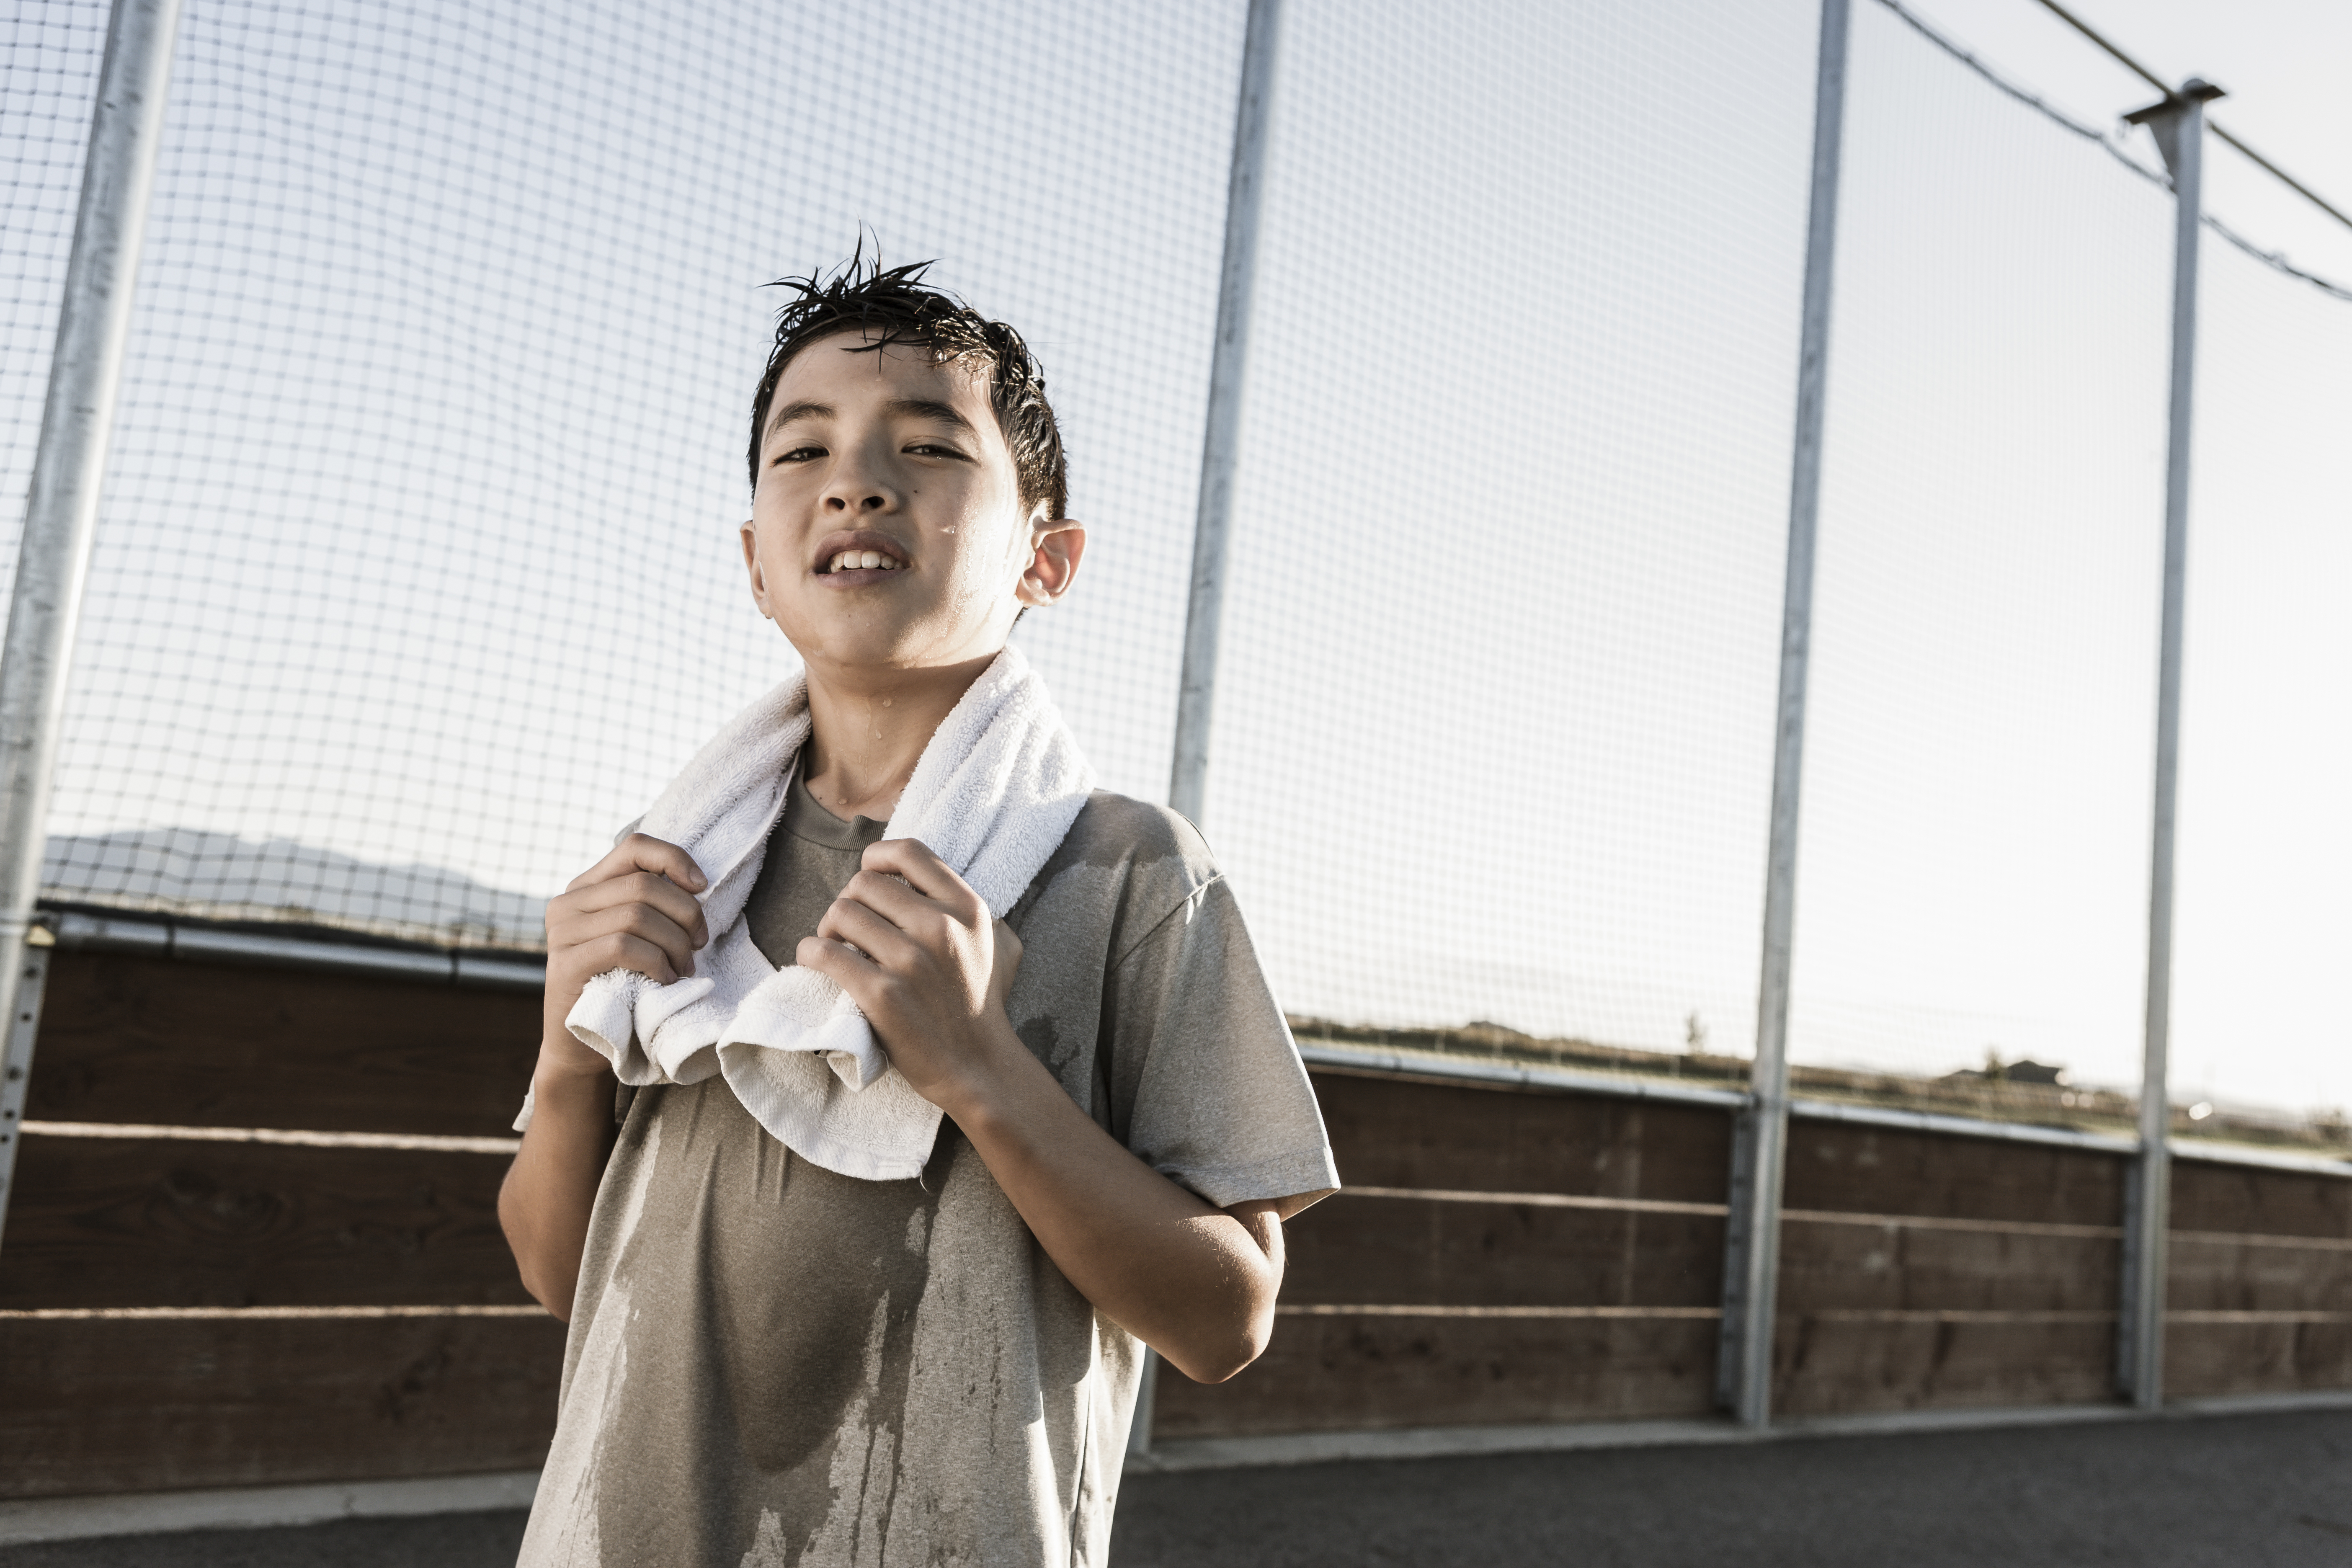 Cuando se acercan a la pubertad, los niños empiezan a sudar por cambios hormonales, cuando pueden comenzar a usar desodorantes adecuados para ellos. (Foto Prensa Libre, Shutterstock)